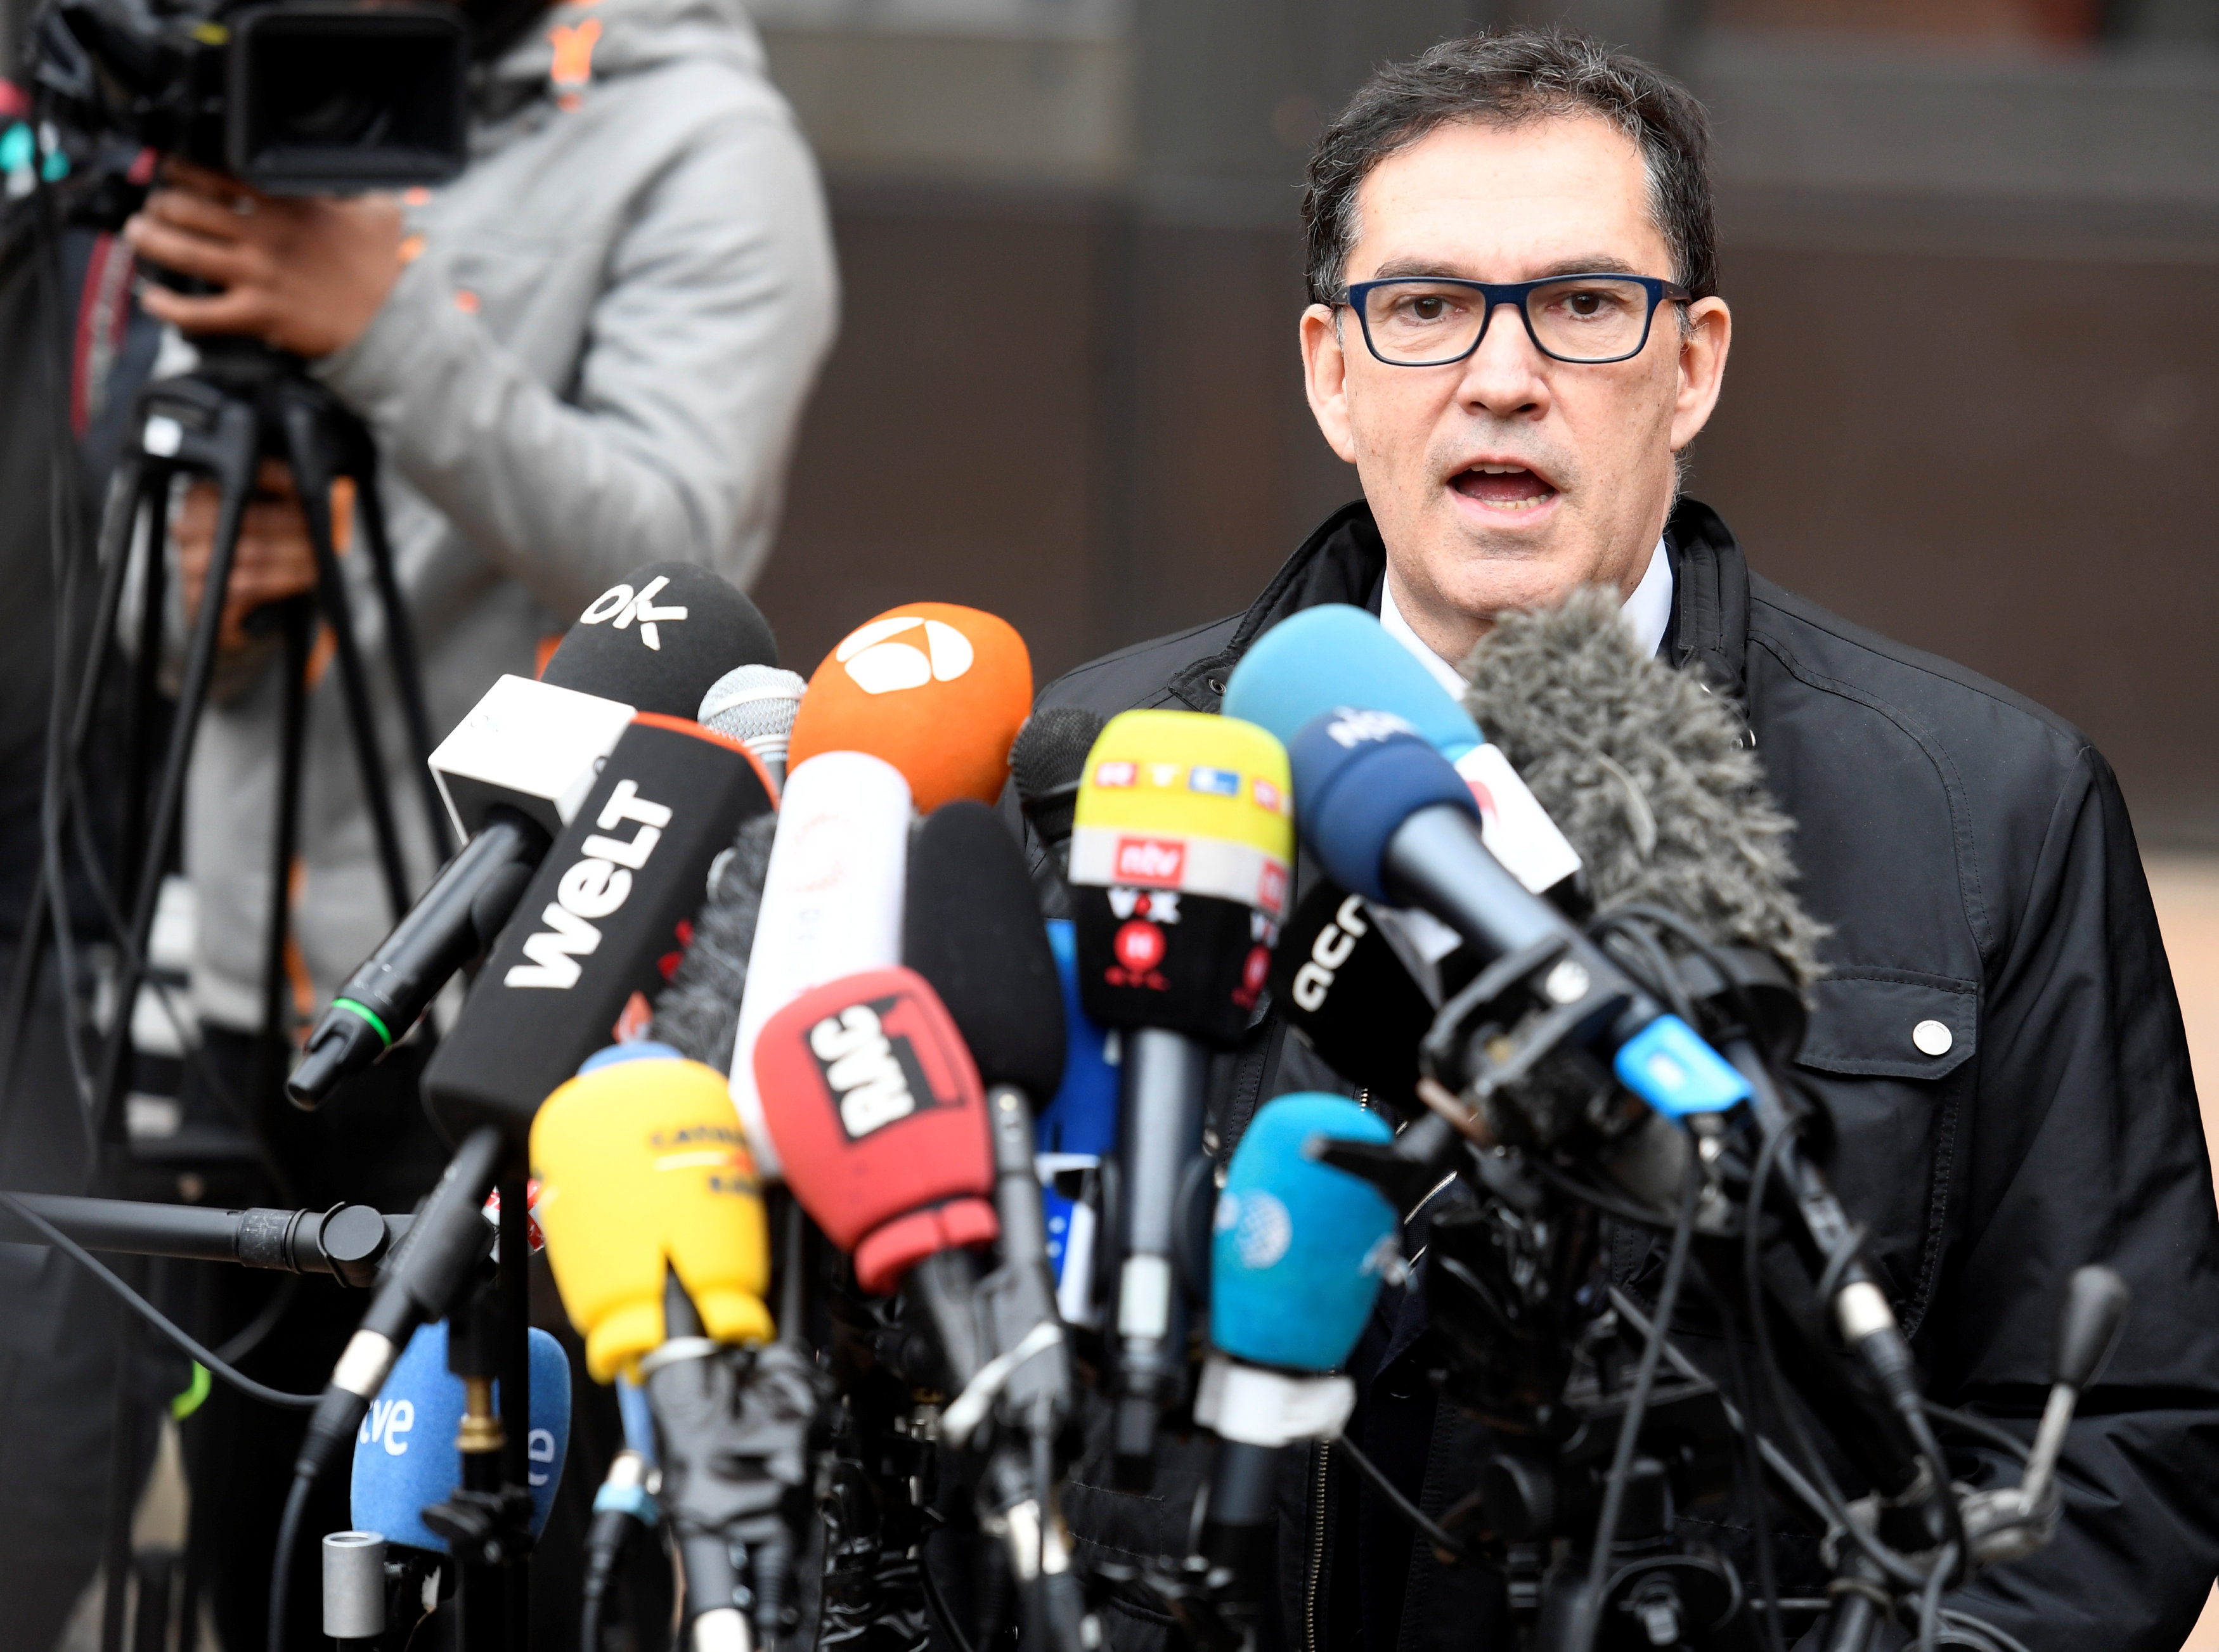 Puigdemont no desfallecerá y continuará su combate, dice abogado